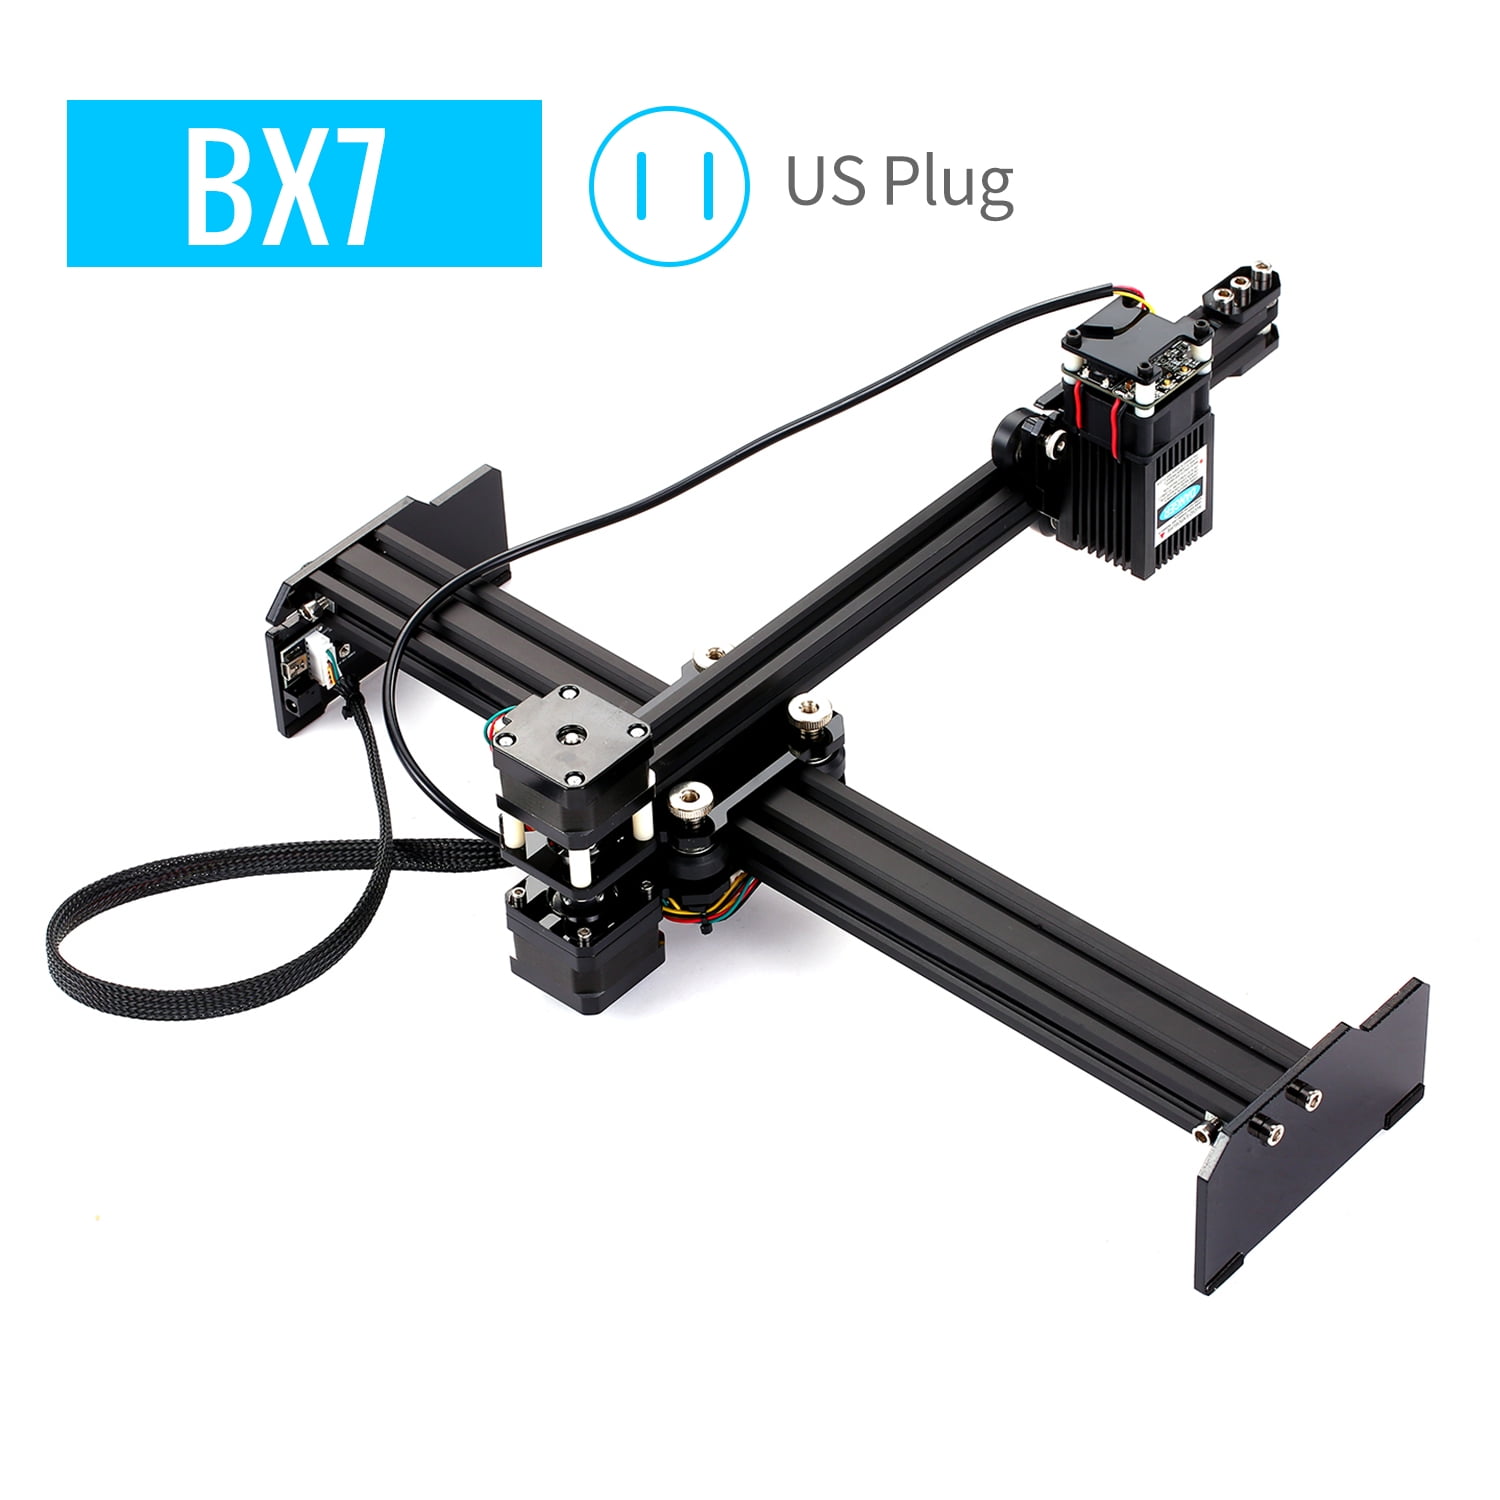 2.5W DIY Kit Laser USB Engraver Cutter Engraving Carving Machine Printer CNC 